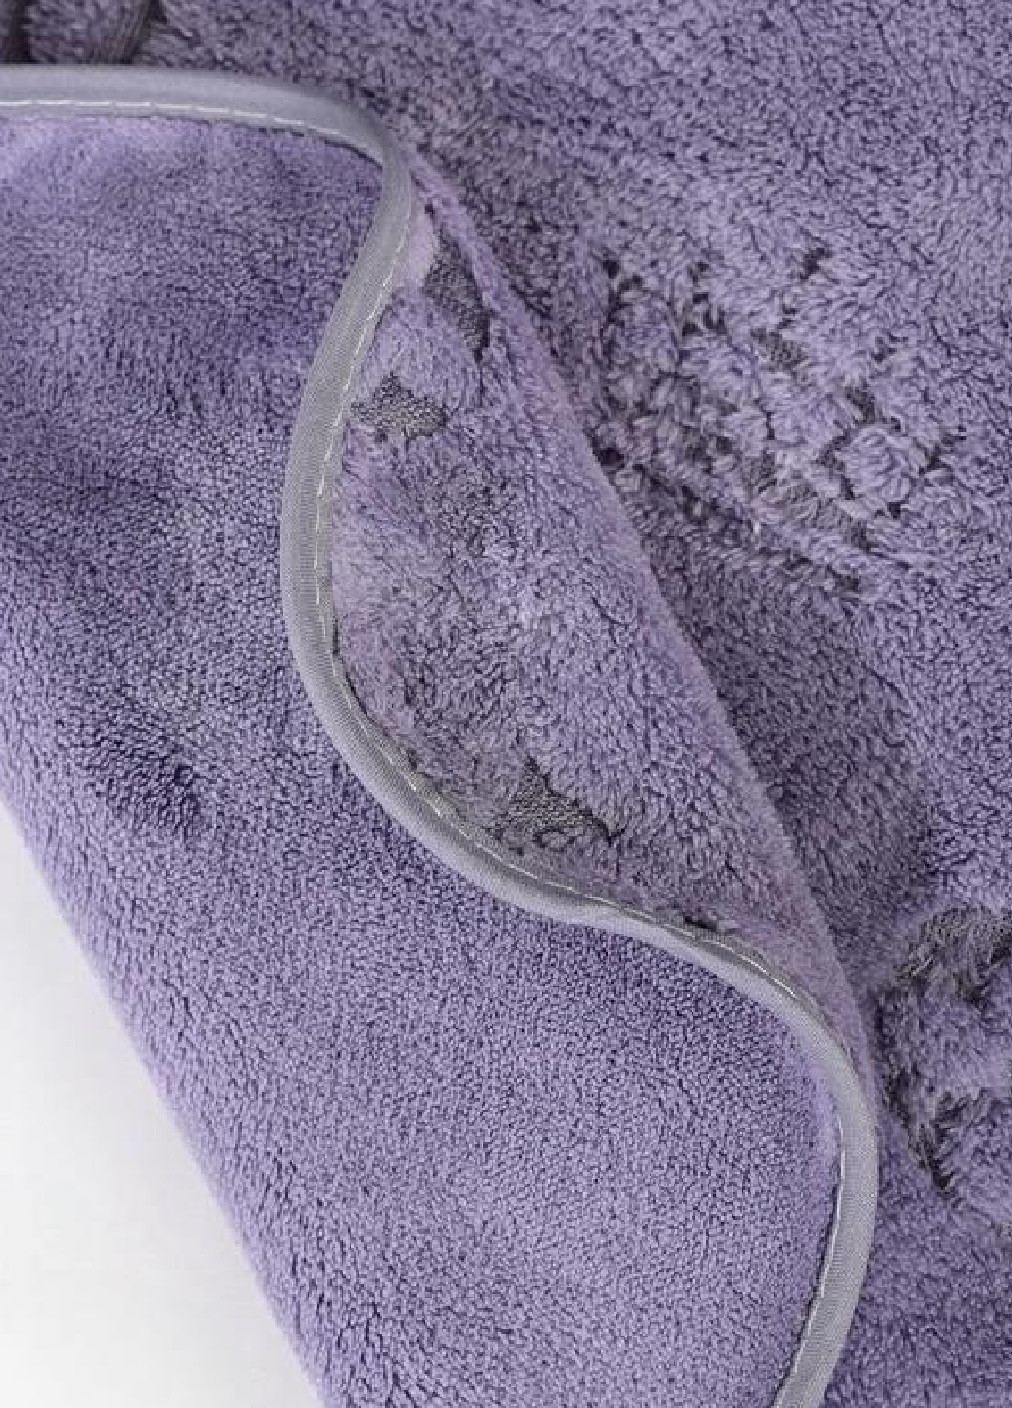 Unbranded полотенце микрофибра велюр для ванны бани сауны пляжа быстросохнущее с узором 140х70 см (476142-prob) бренд фиолетовое абстрактный фиолетовый производство -